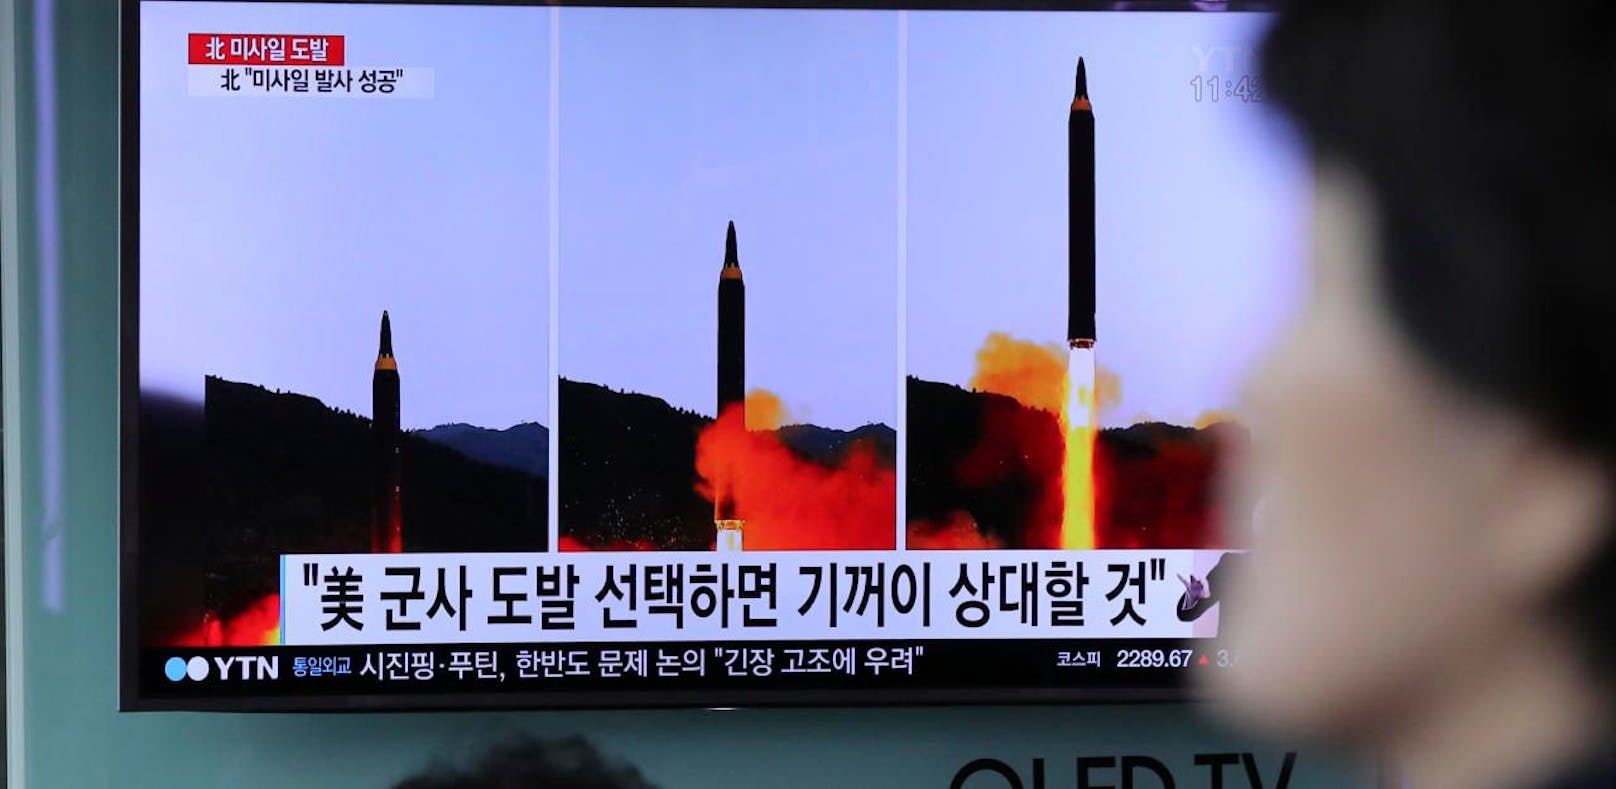 Eine südkoreanische Nachrichtensendung zeigt einen nordkoreanischen Raketentest.